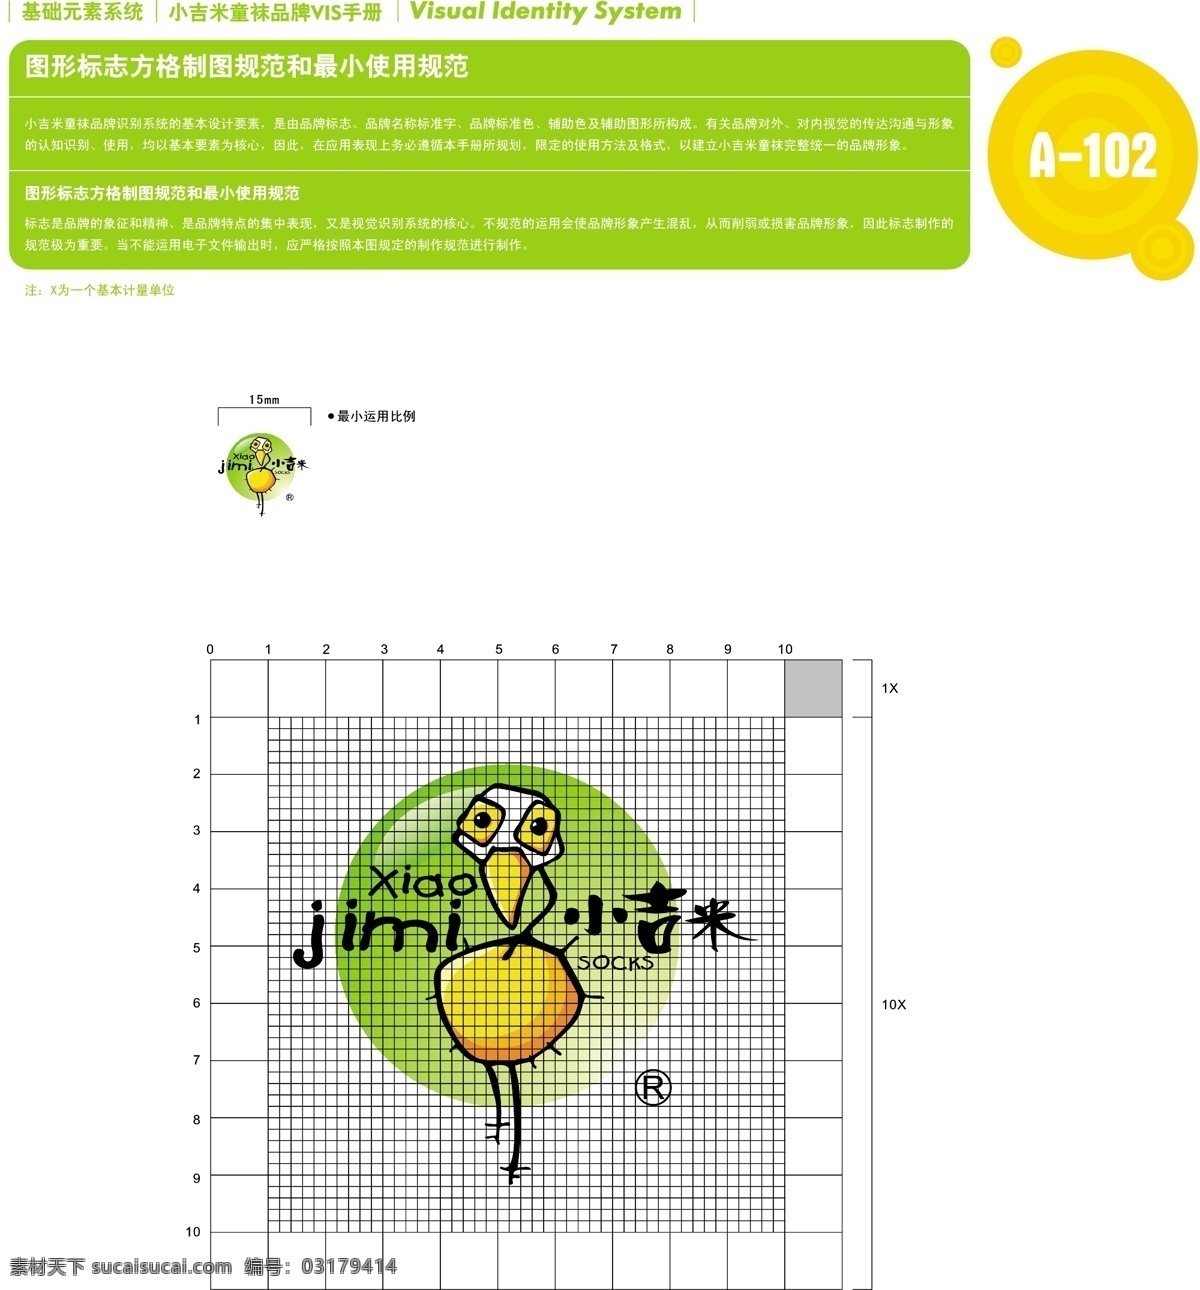 香港 小 吉米 童袜 vi vi宝典 vi设计 矢量 文件 基础 元素 系统 规范 矢量图